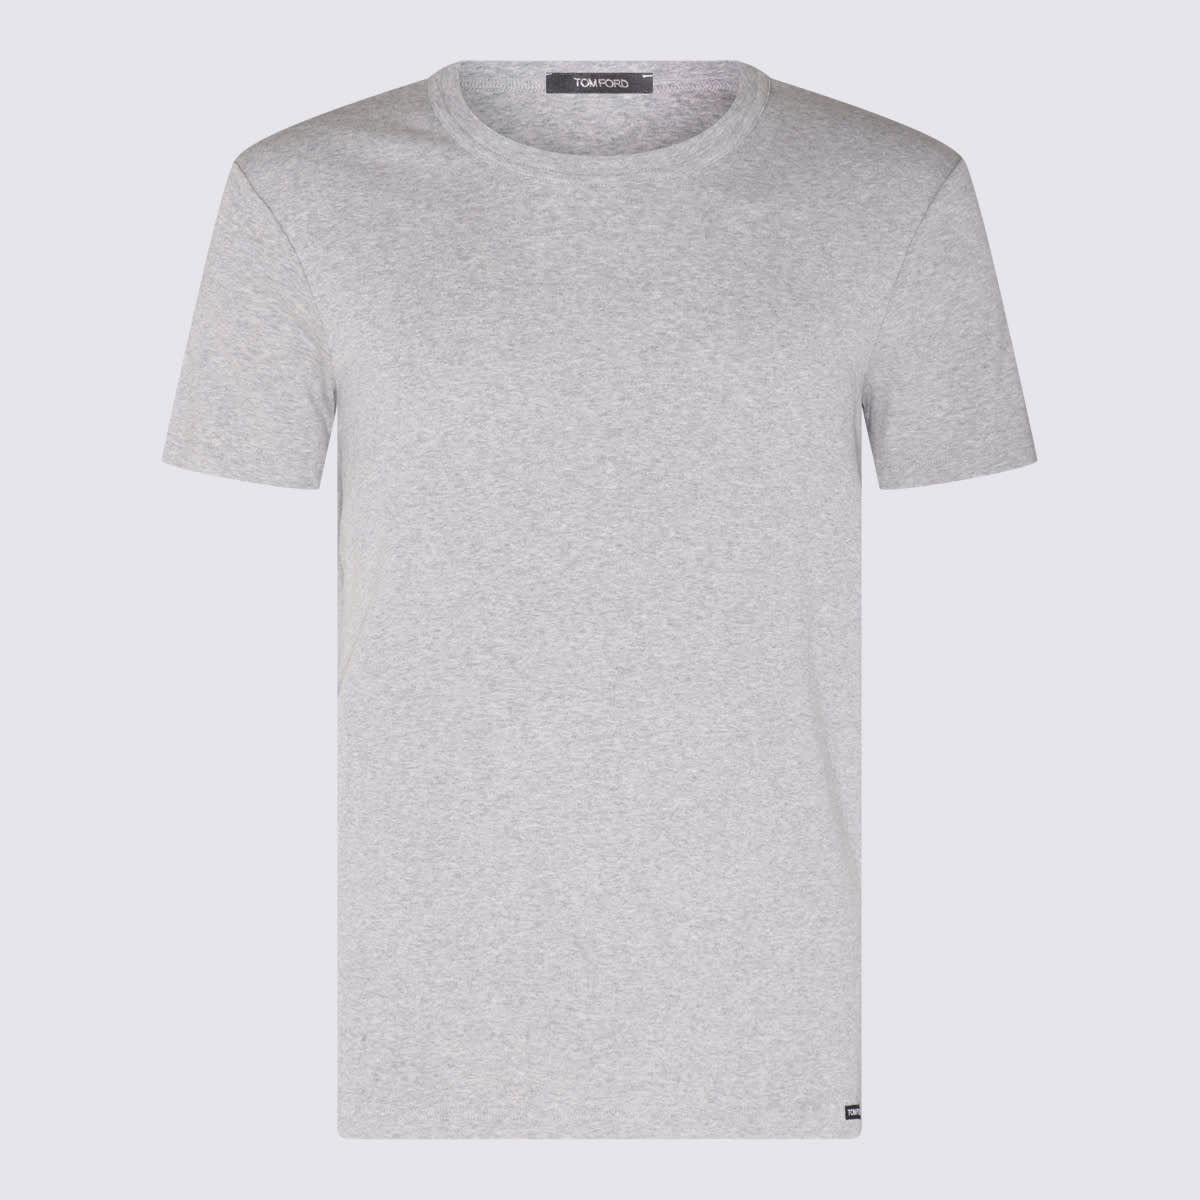 Grey Cotton Blend T-shirt